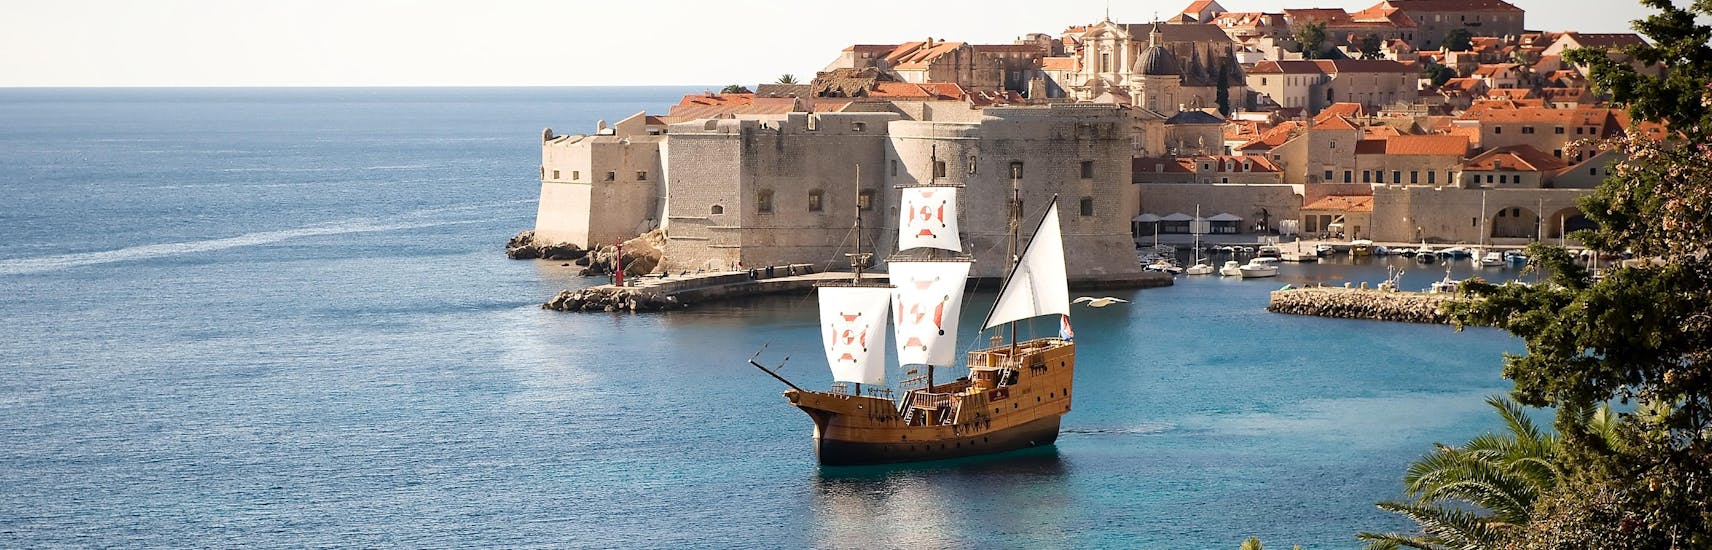 Foto van het traditionele Karaka schip dat door Karaka Dubrovnik wordt gebruikt voor de boottochten.